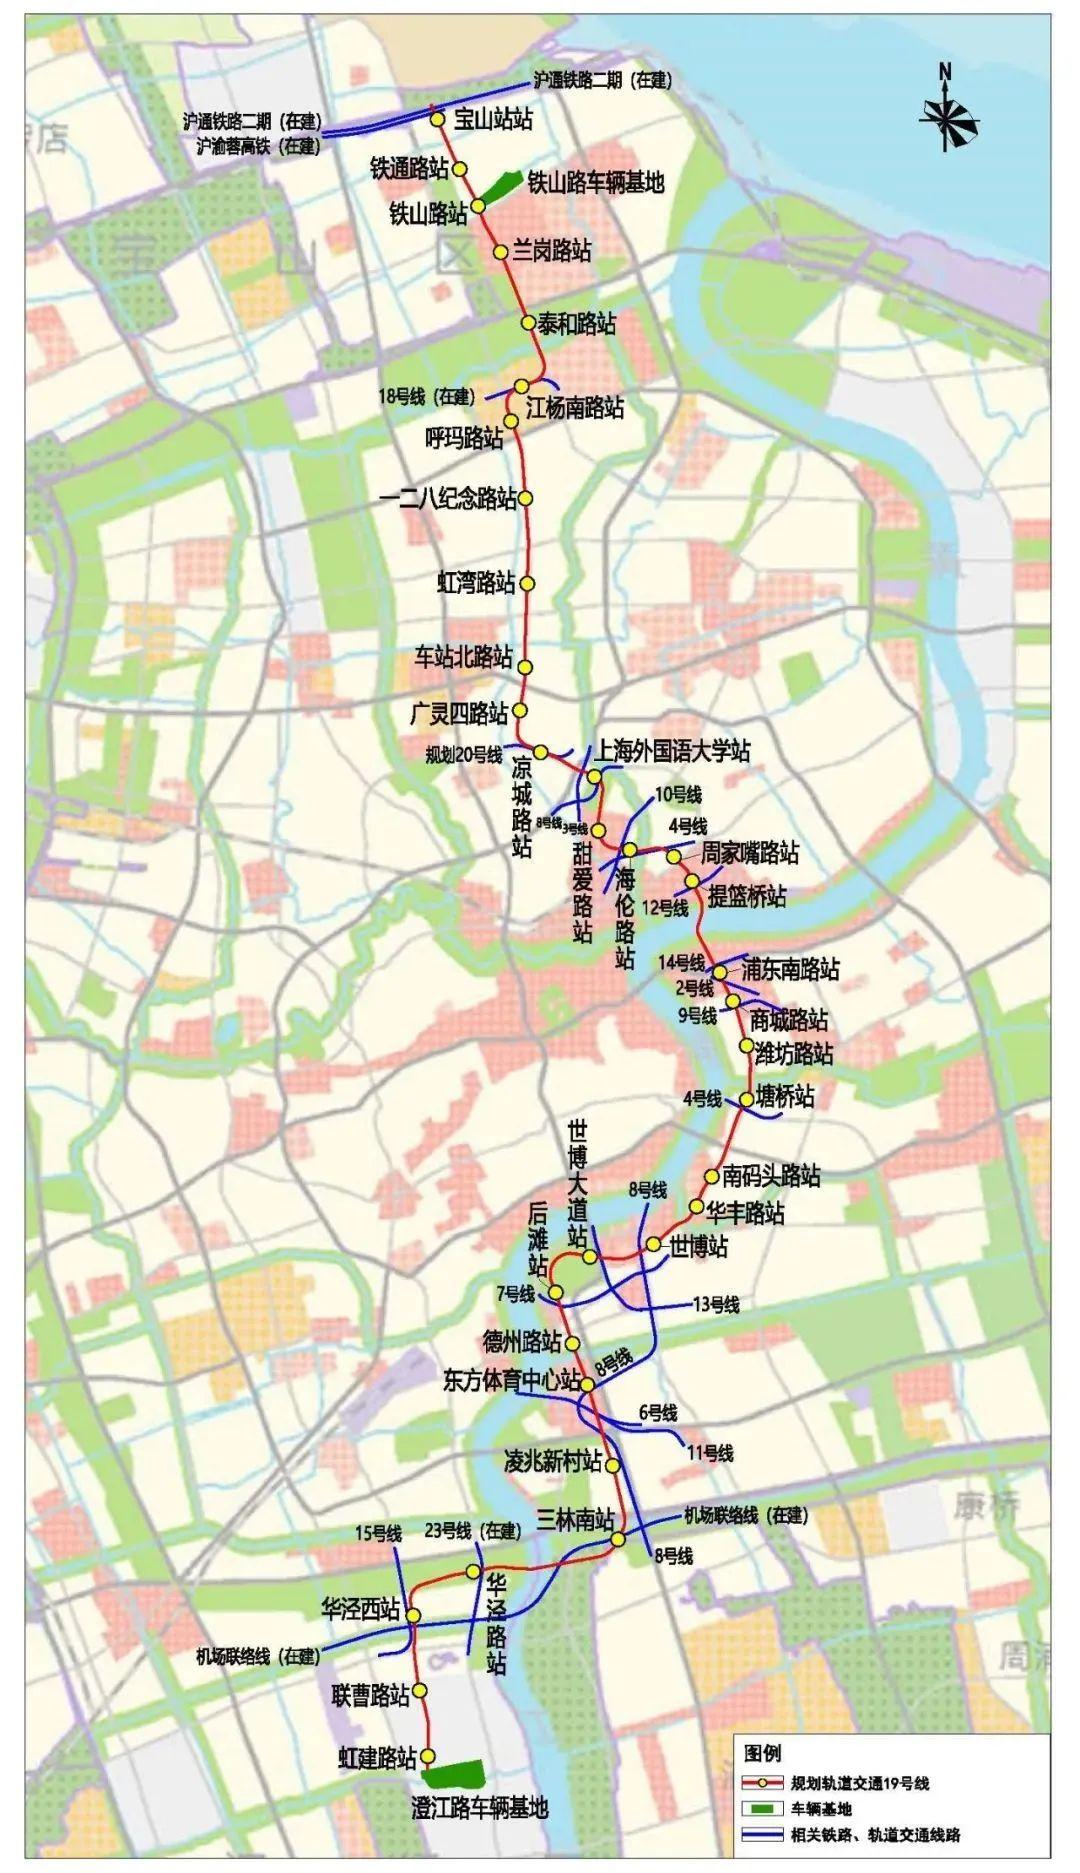 上海地铁又一换乘王来了,涉及5个区,18座车站能换乘!